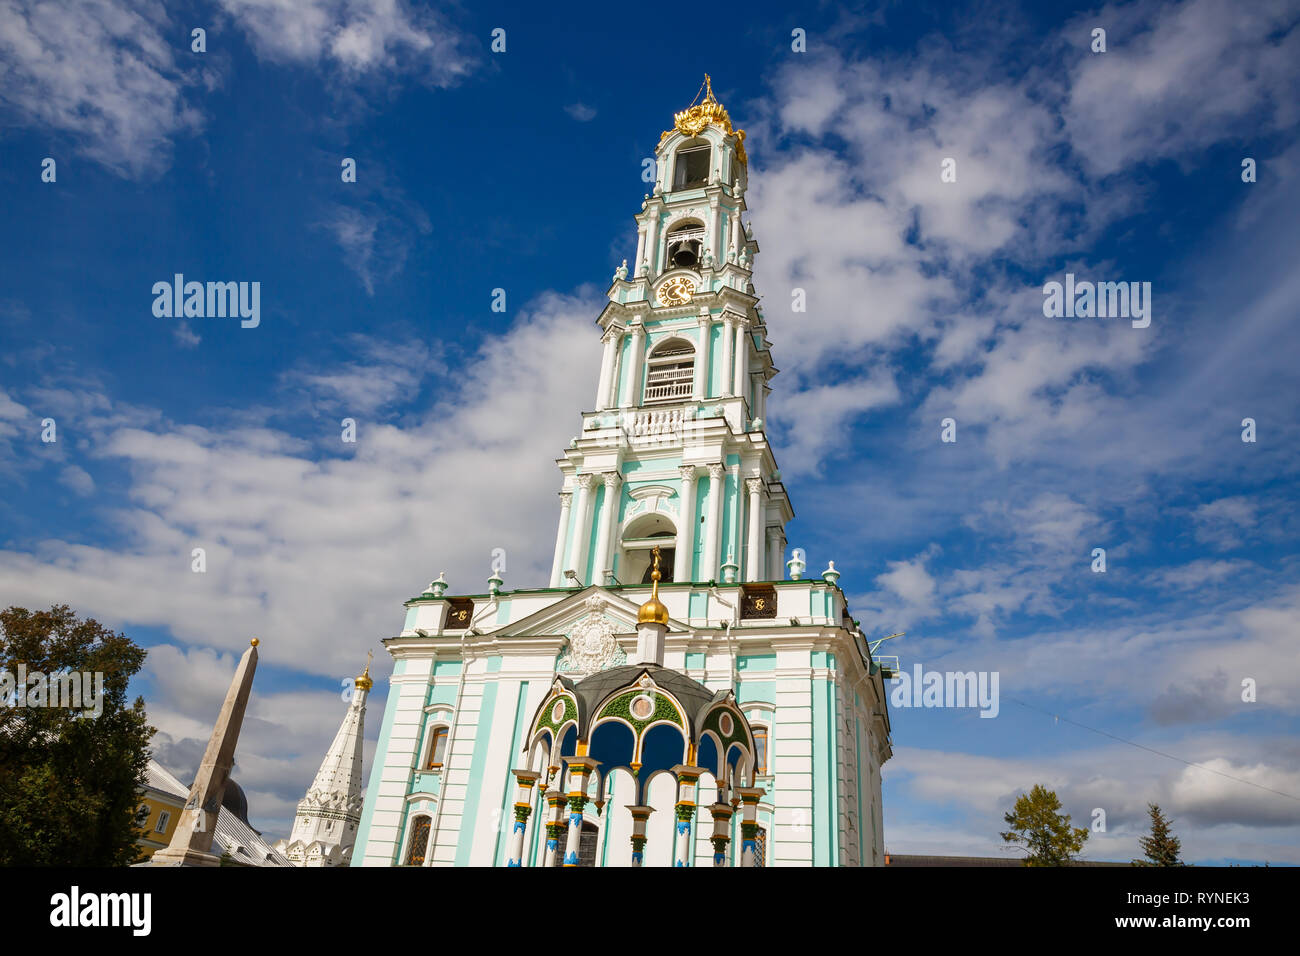 Der Glockenturm in der Heiligen Dreifaltigkeit Lavra von St. Sergius in Sergiev Posad, Russland. Stockfoto